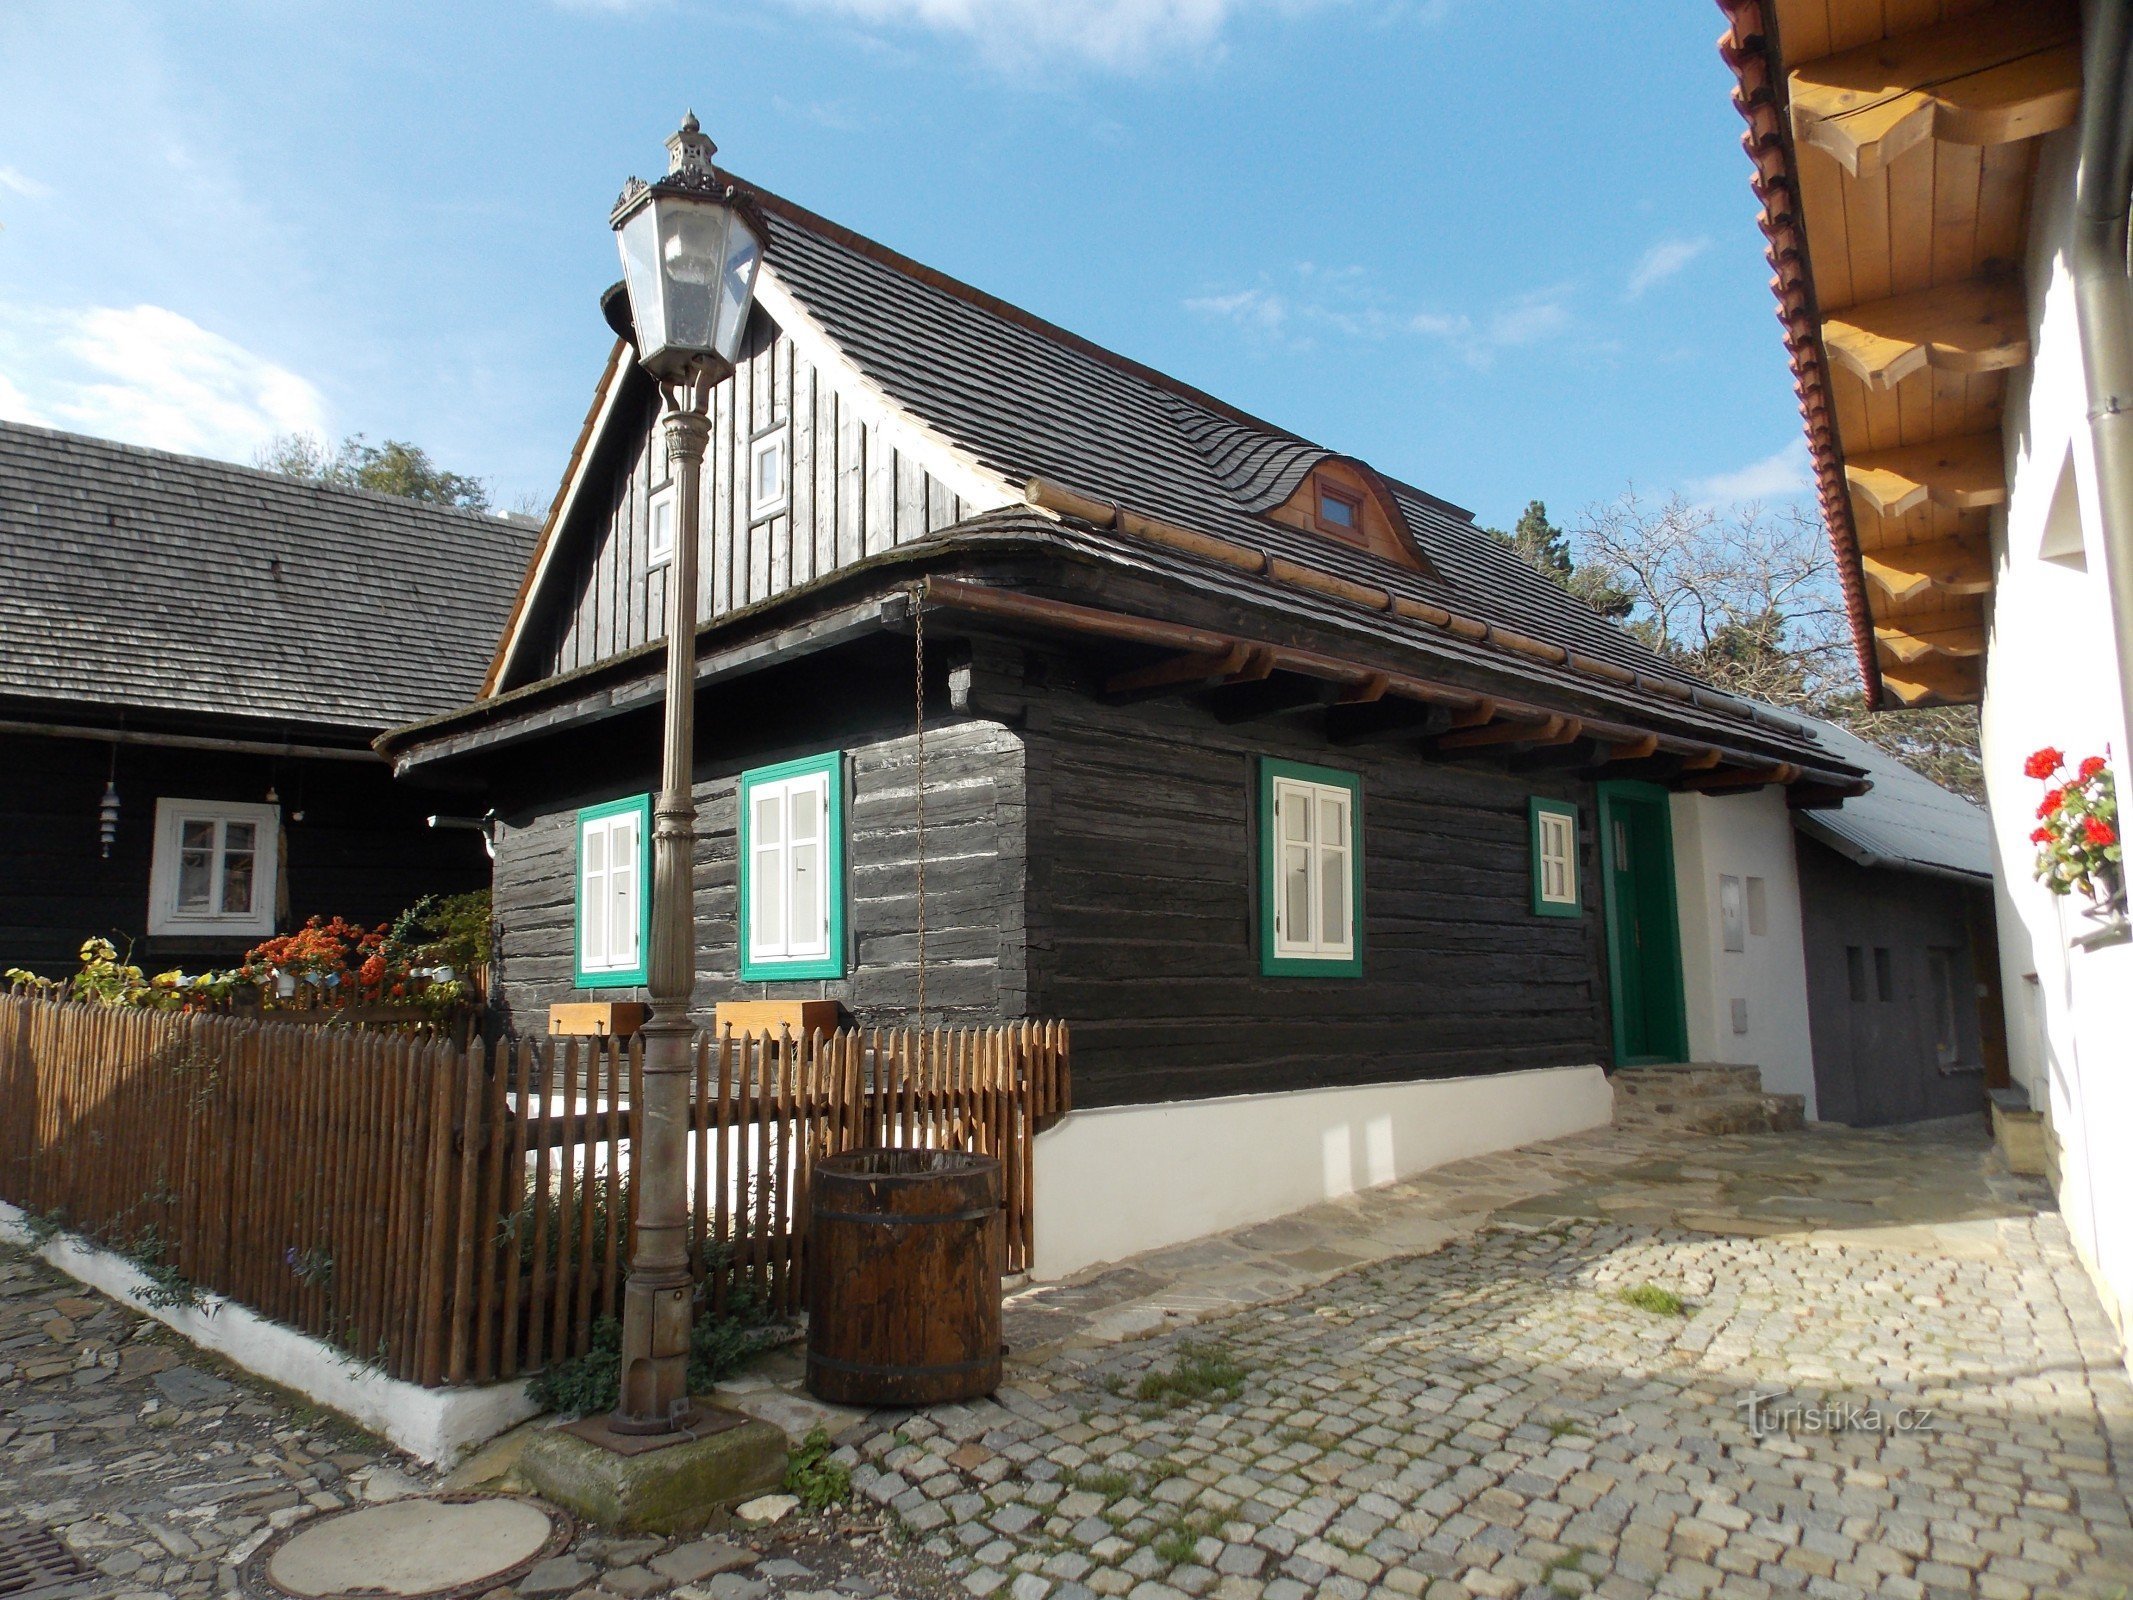 シュトランベルクの丸太小屋の宿泊施設